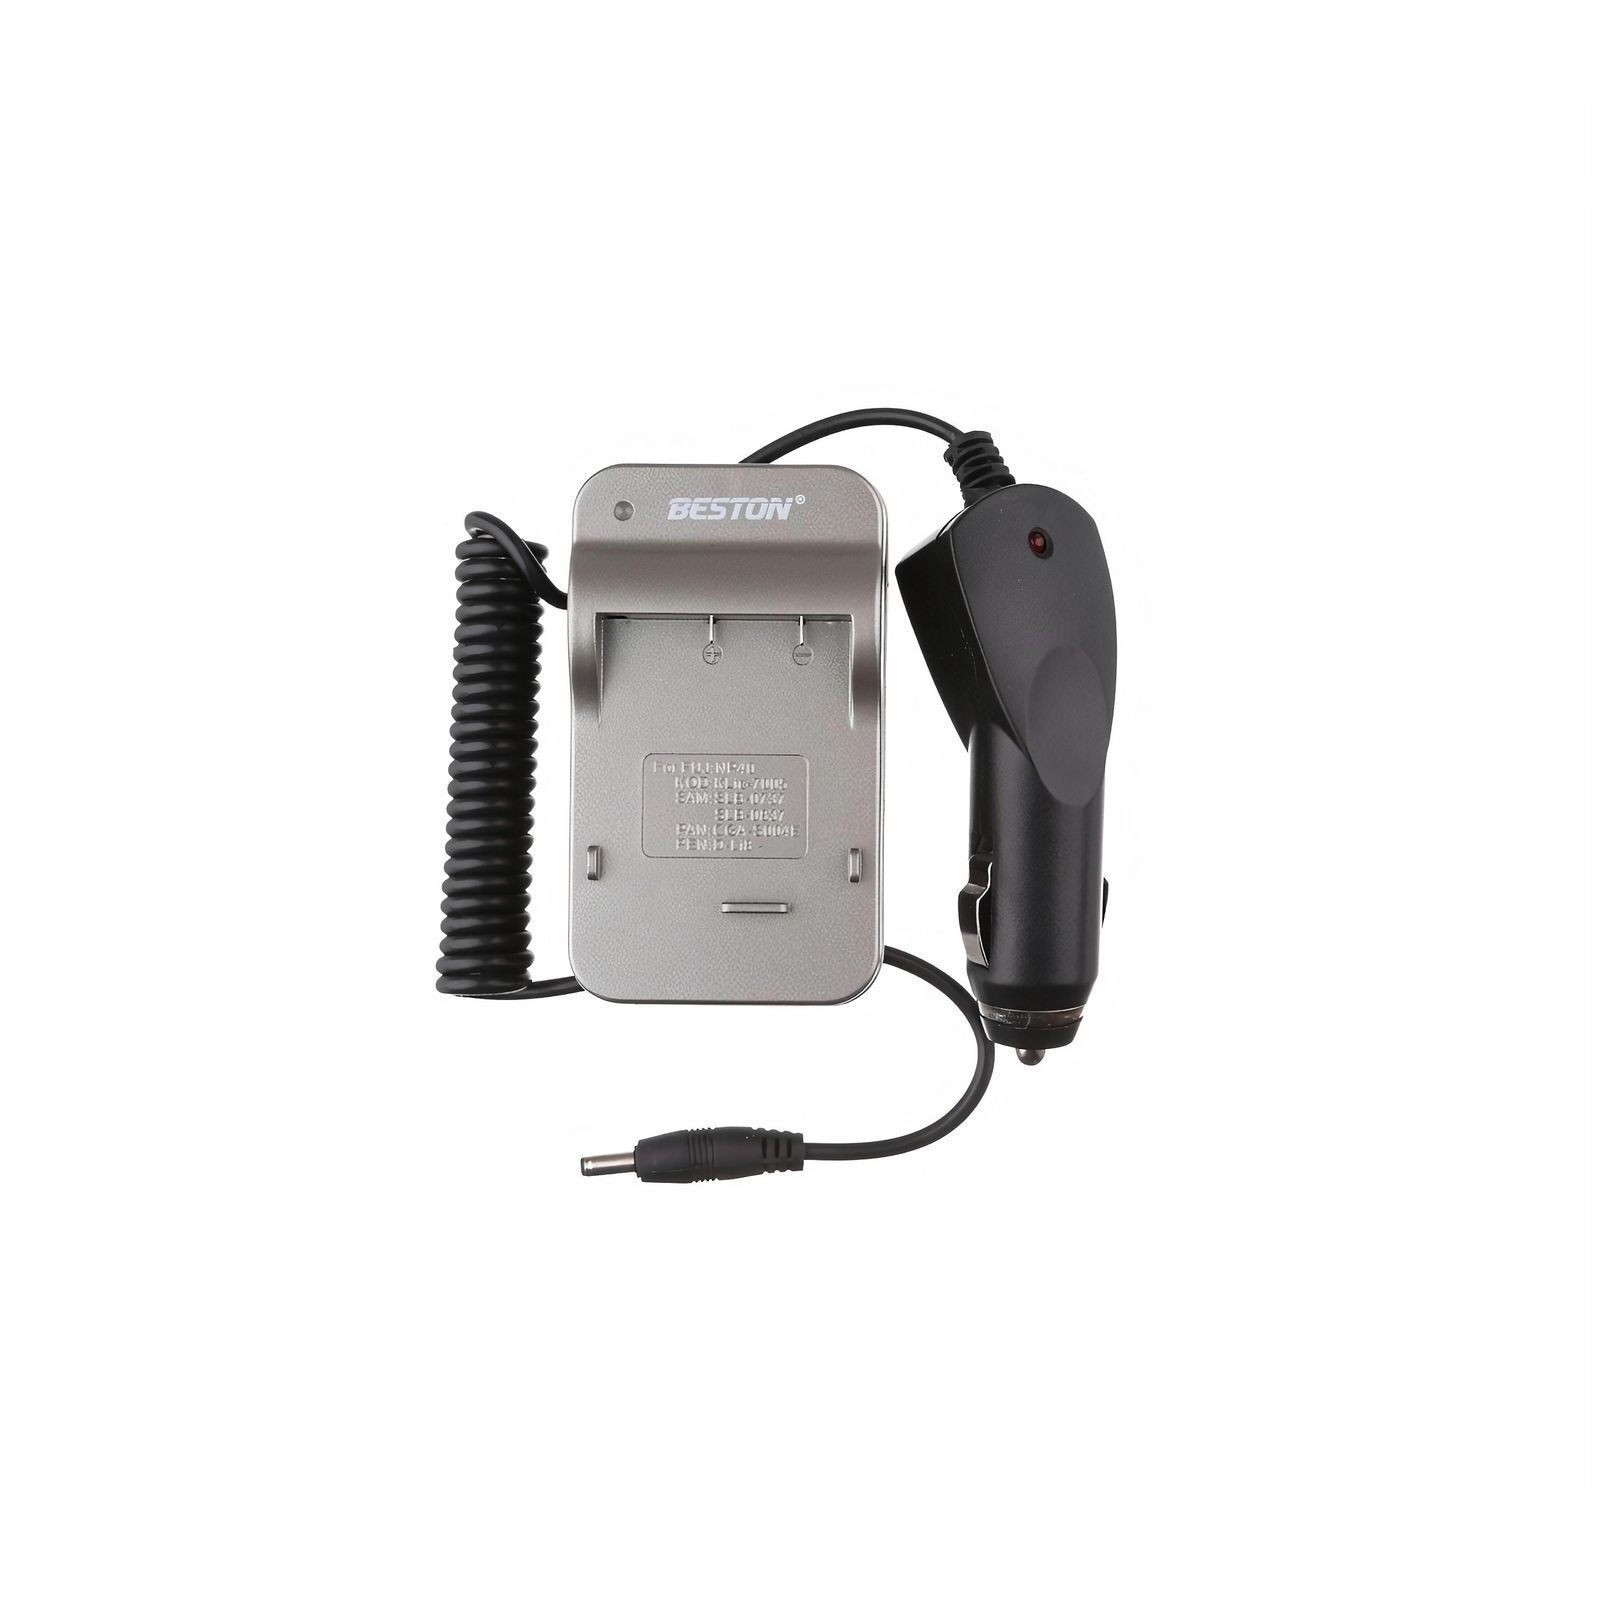 Зарядное устройство Beston BST-610 для Fujifilm NP-40/KLIC- 7005/SLB 0737/SLB 0837, 3308